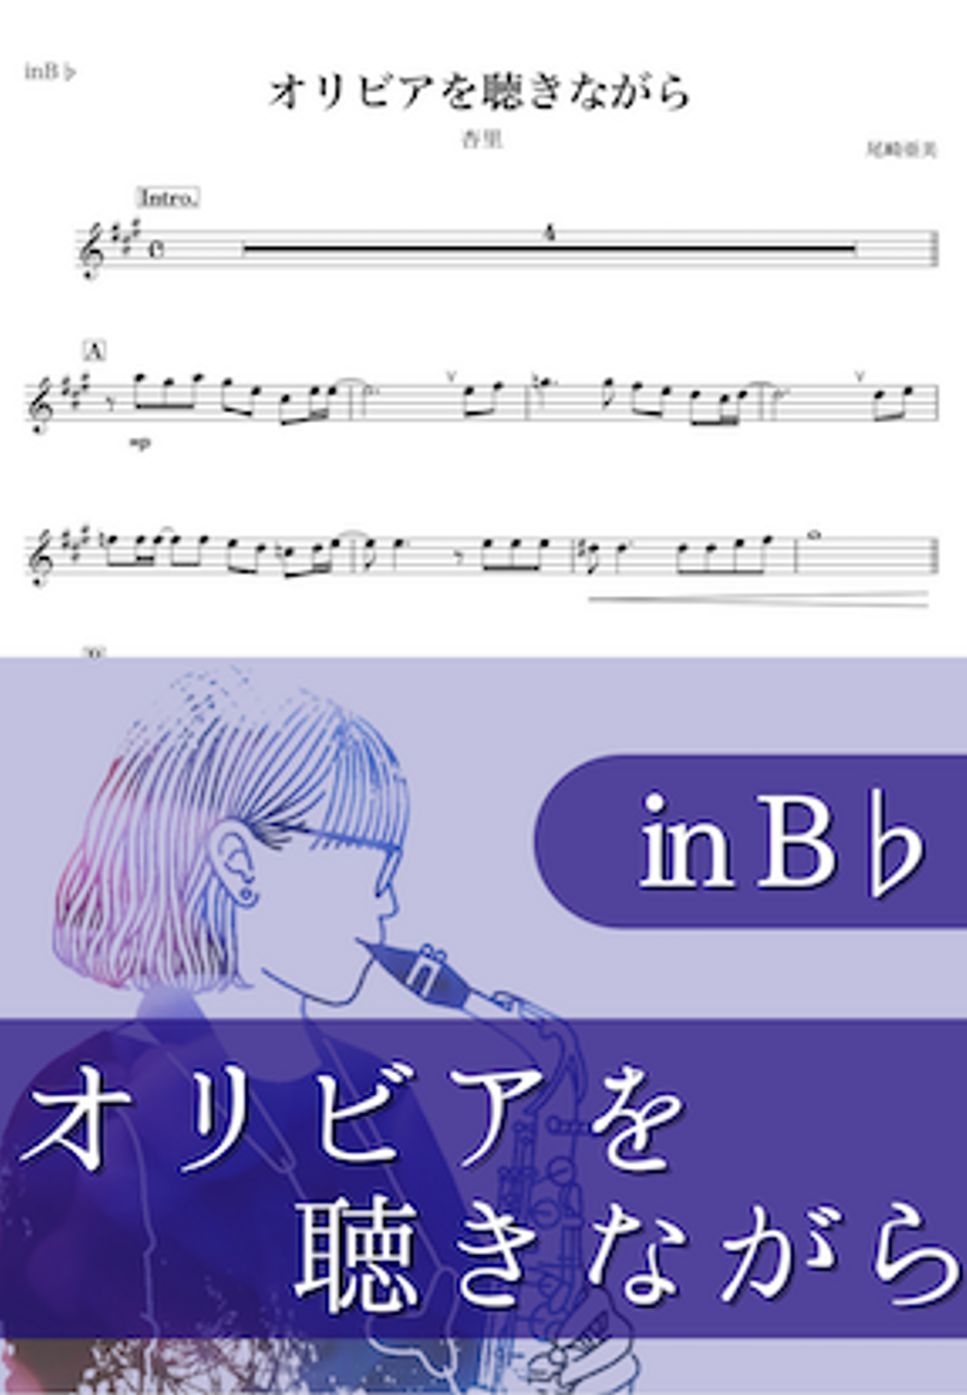 杏里 - オリビアを聴きながら (B♭) by kanamusic